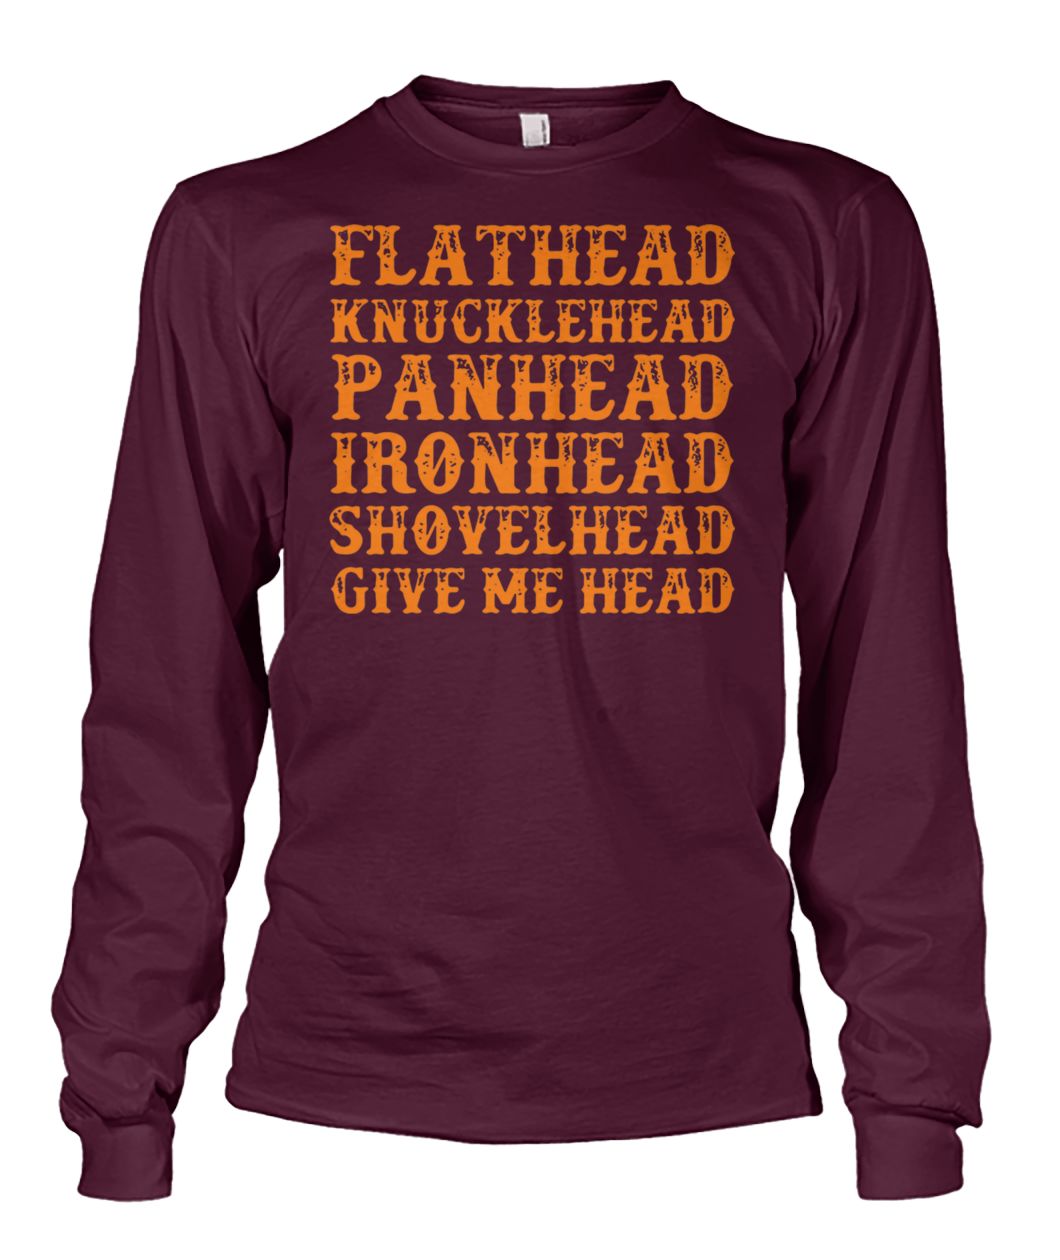 Flathead knucklehead panhead ironhead shovelhead give me head unisex long sleeve